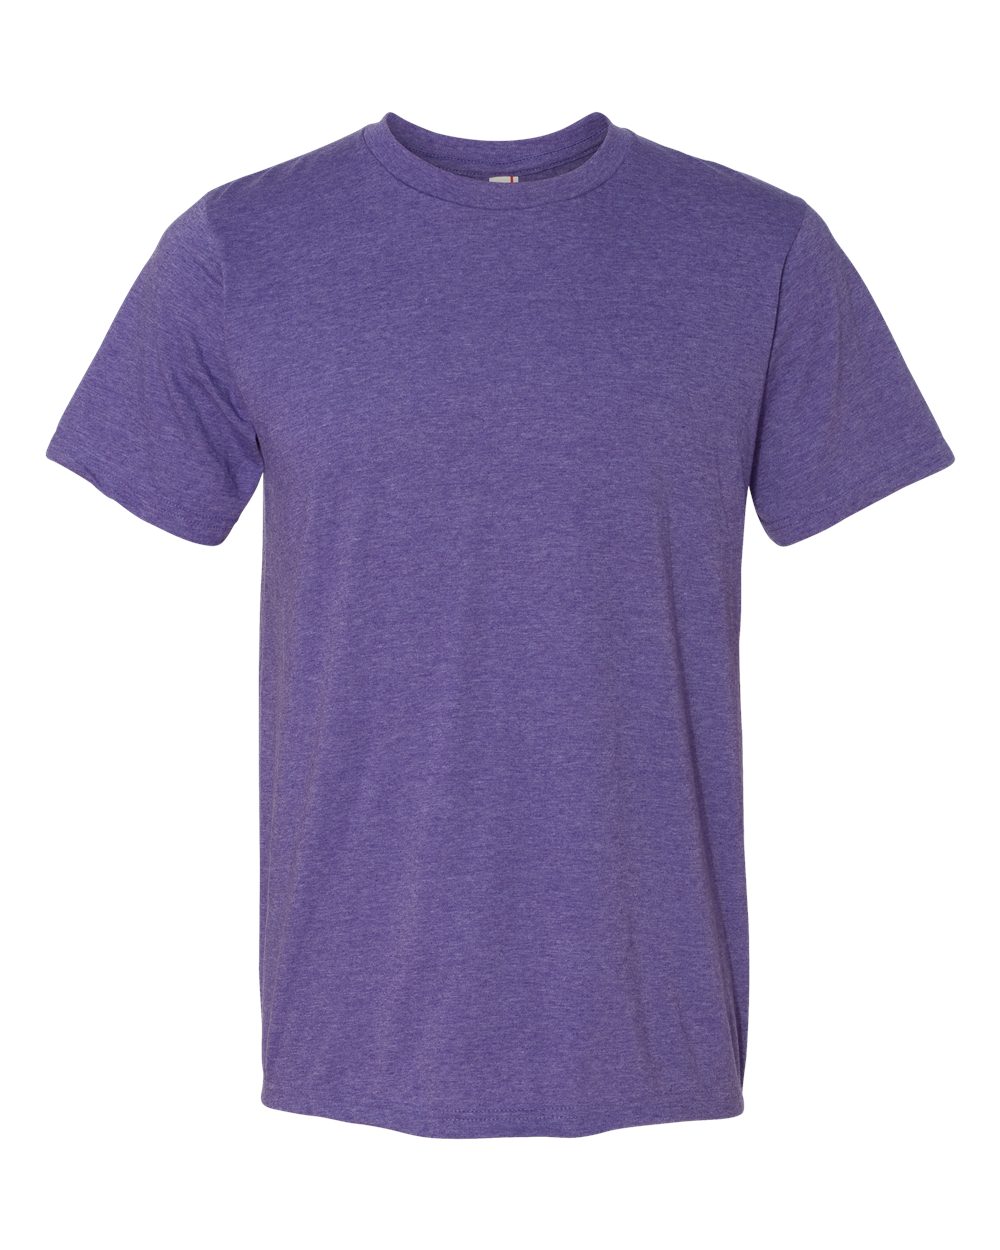 Anvil 980 - 100% Cotton Lightweight T-Shirt $4.07 - T-Shirts